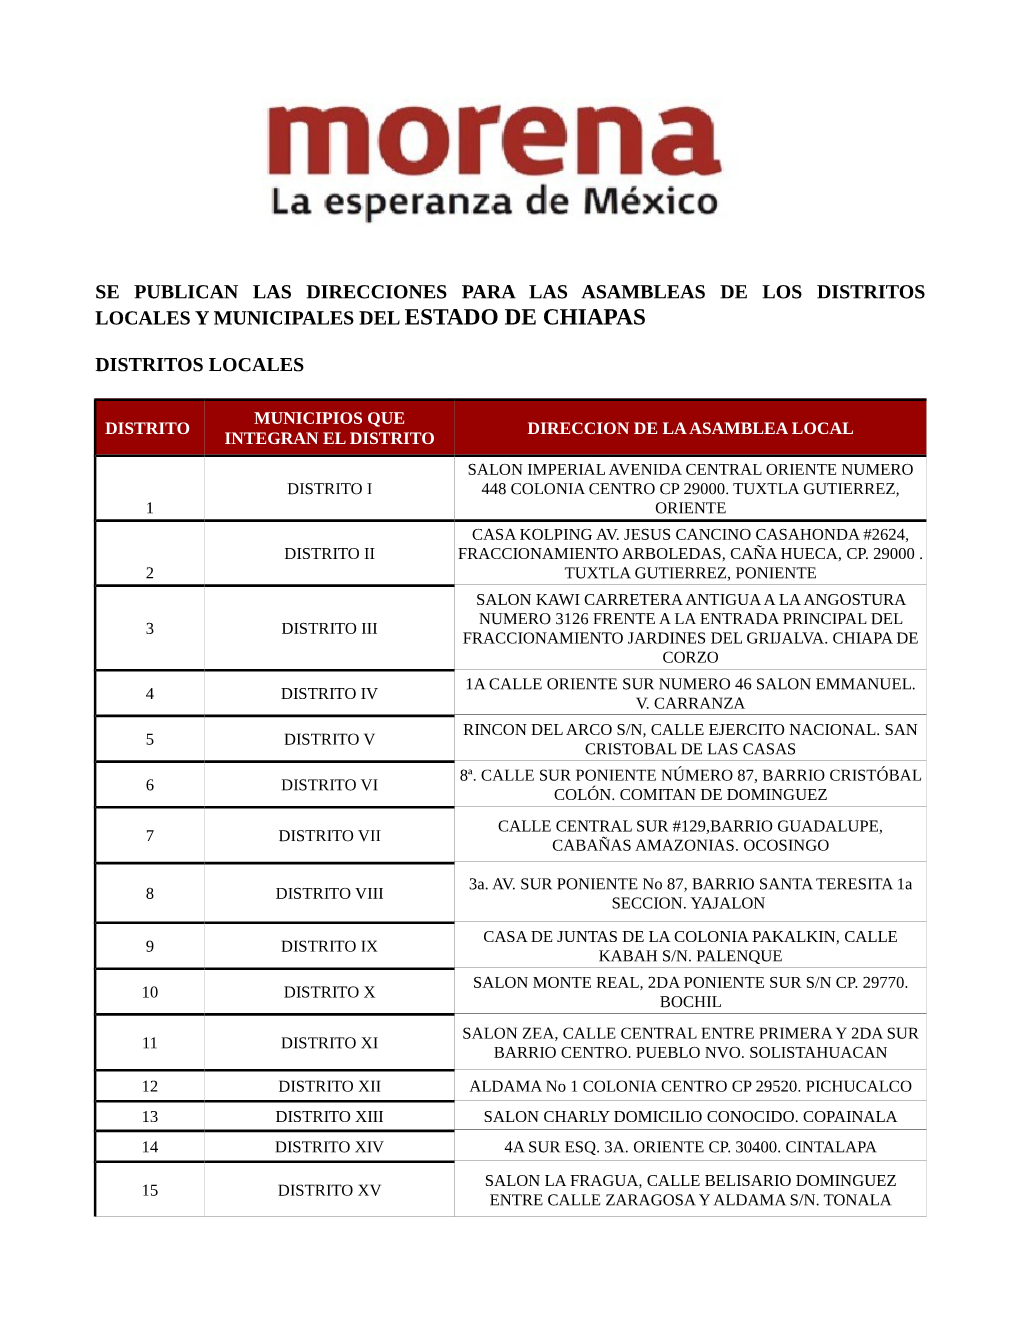 Las Direcciones Para Las Asambleas De Los Distritos Locales Y Municipales Del Estado De Chiapas